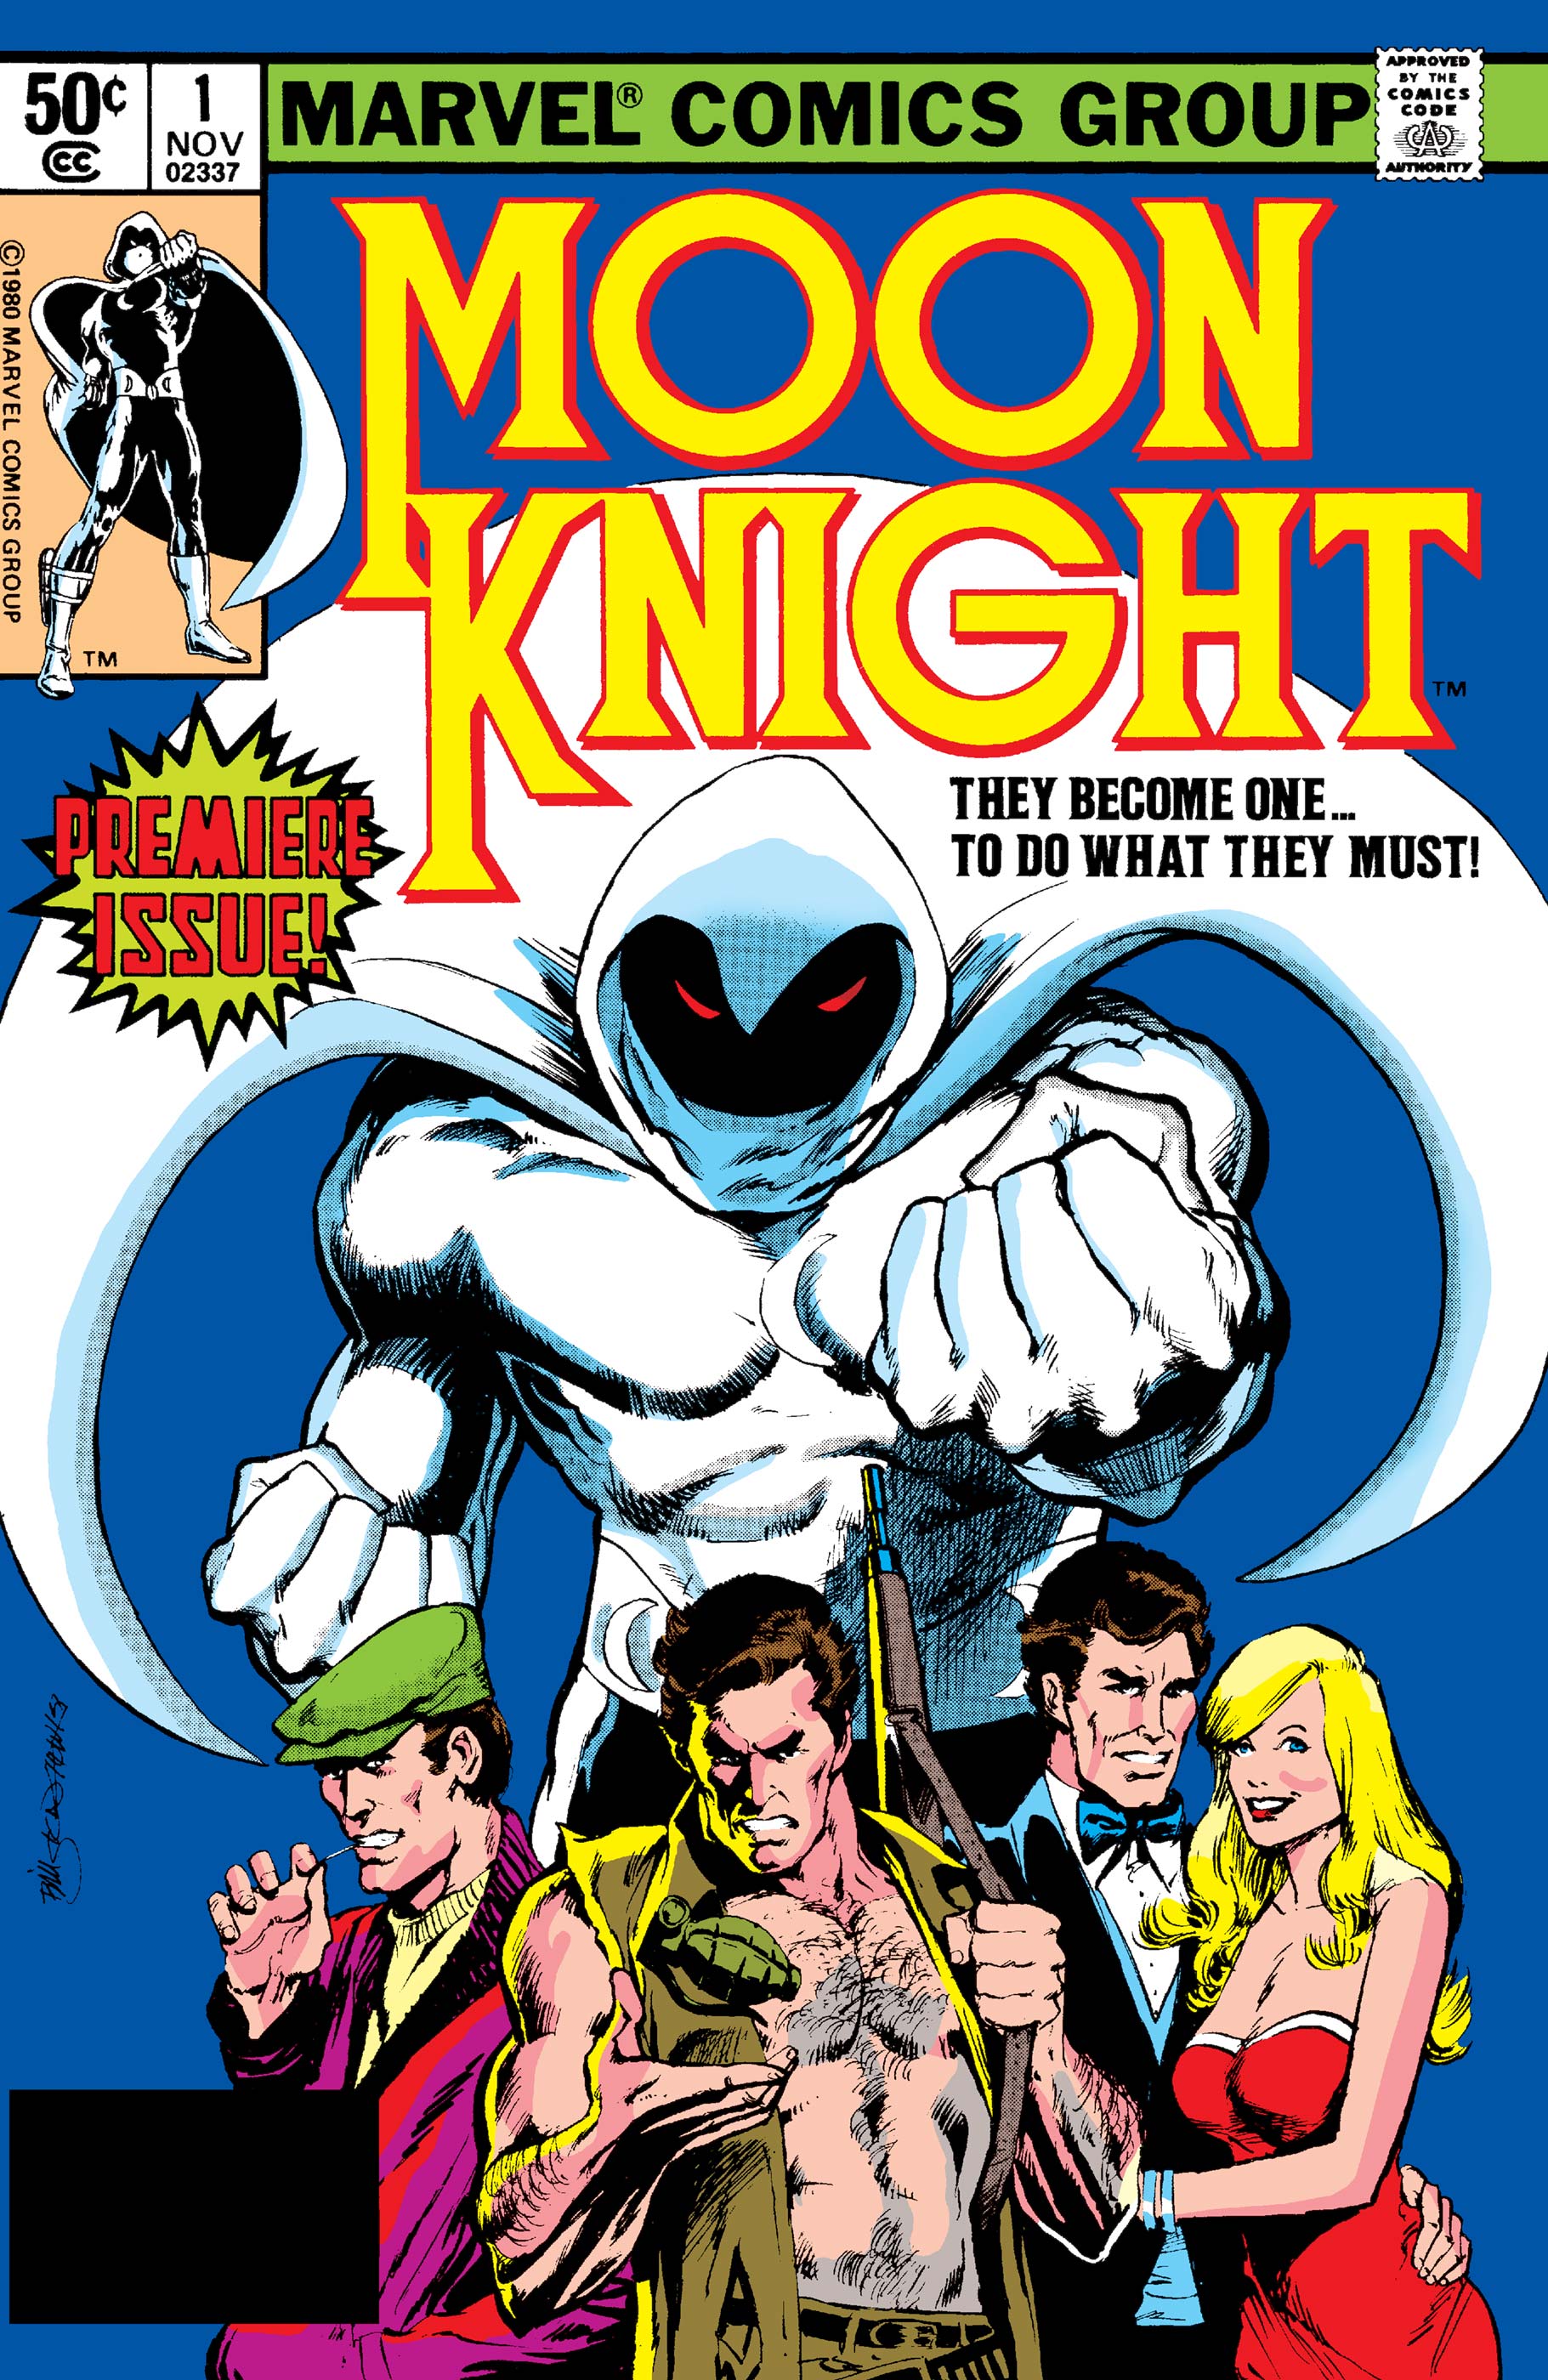 USA, 1980 Bill Sienkiewicz Moon Knight # 1 